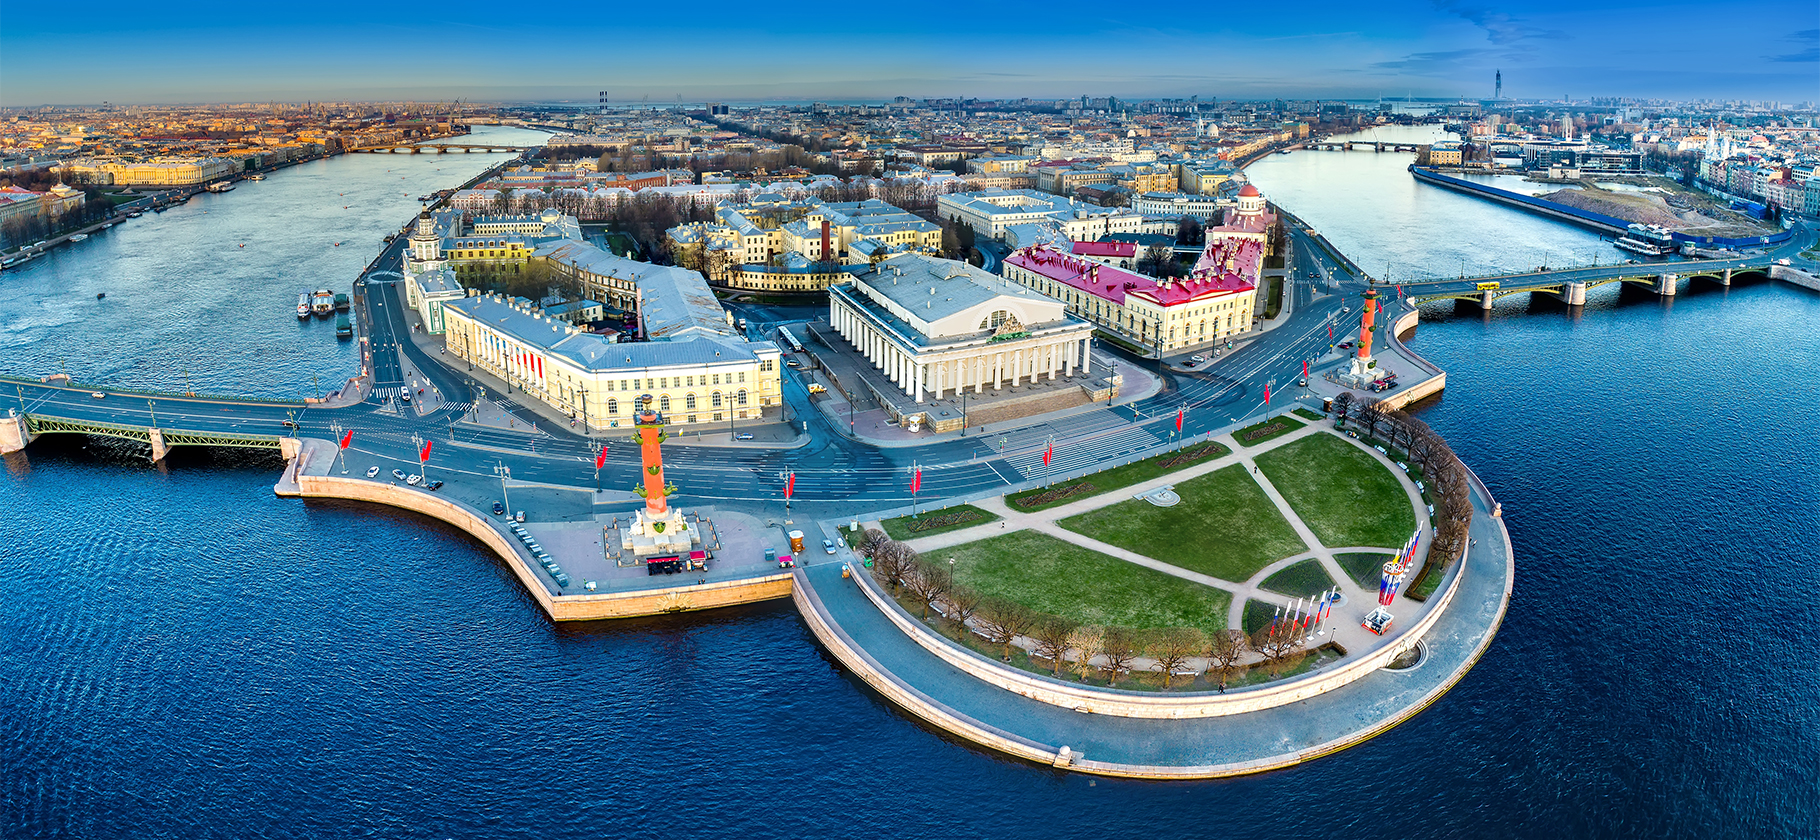 Как живется в Петербурге на Васильевском острове